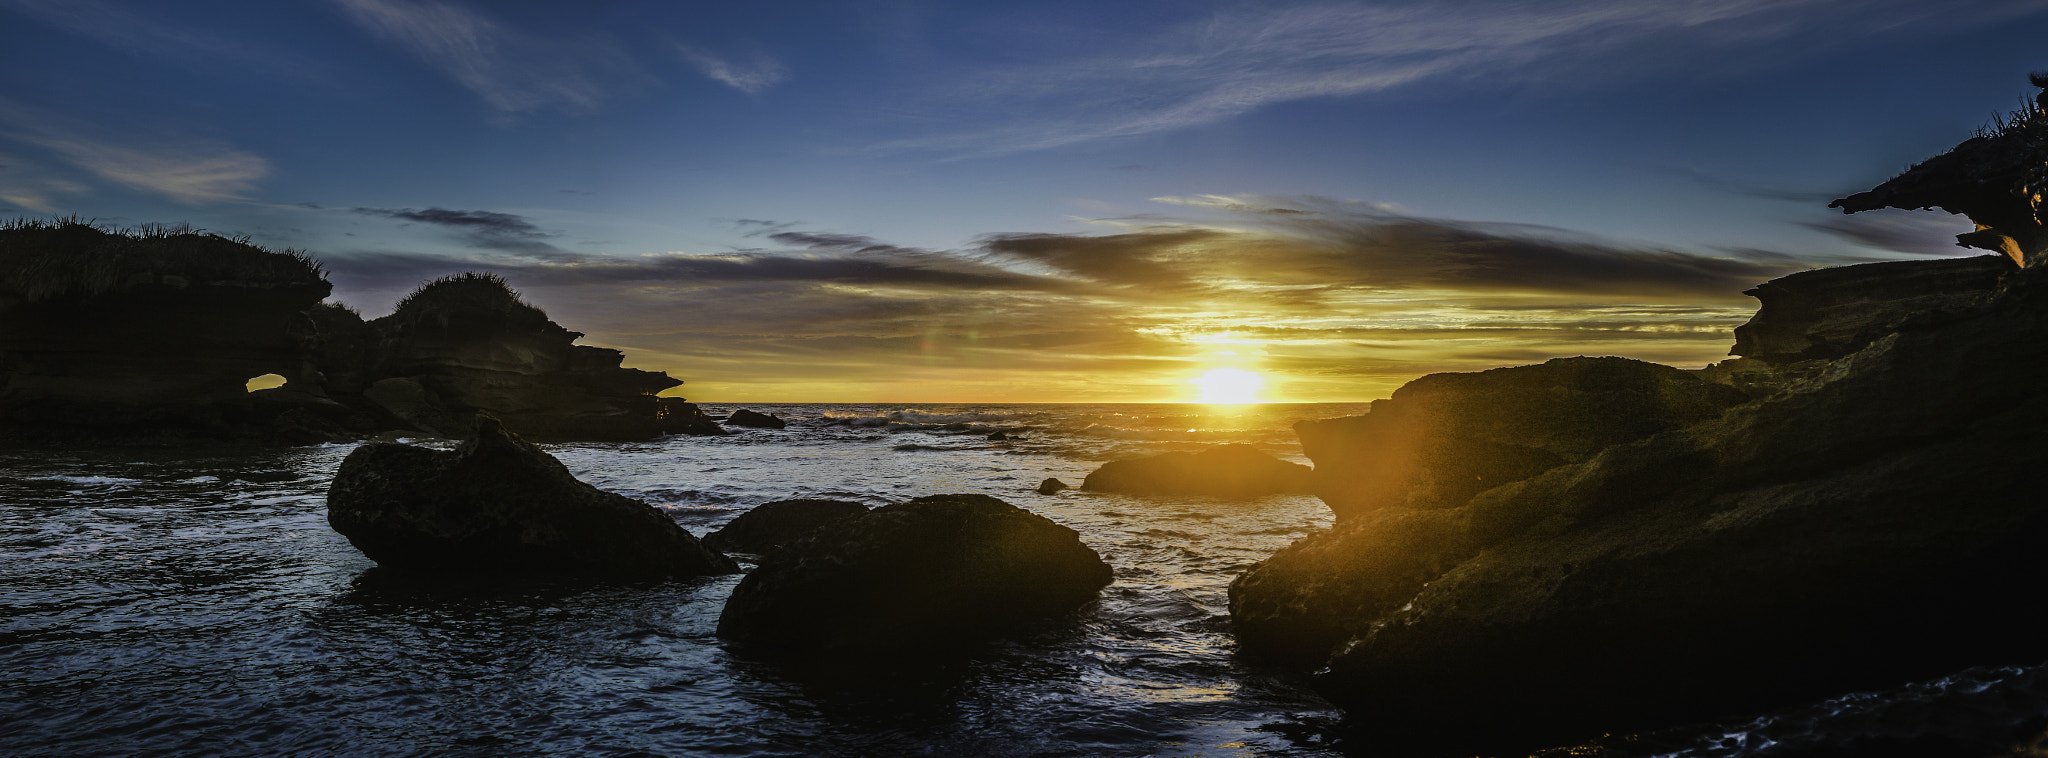 Panasonic Lumix DMC-G2 sample photo. West coast sunset photography